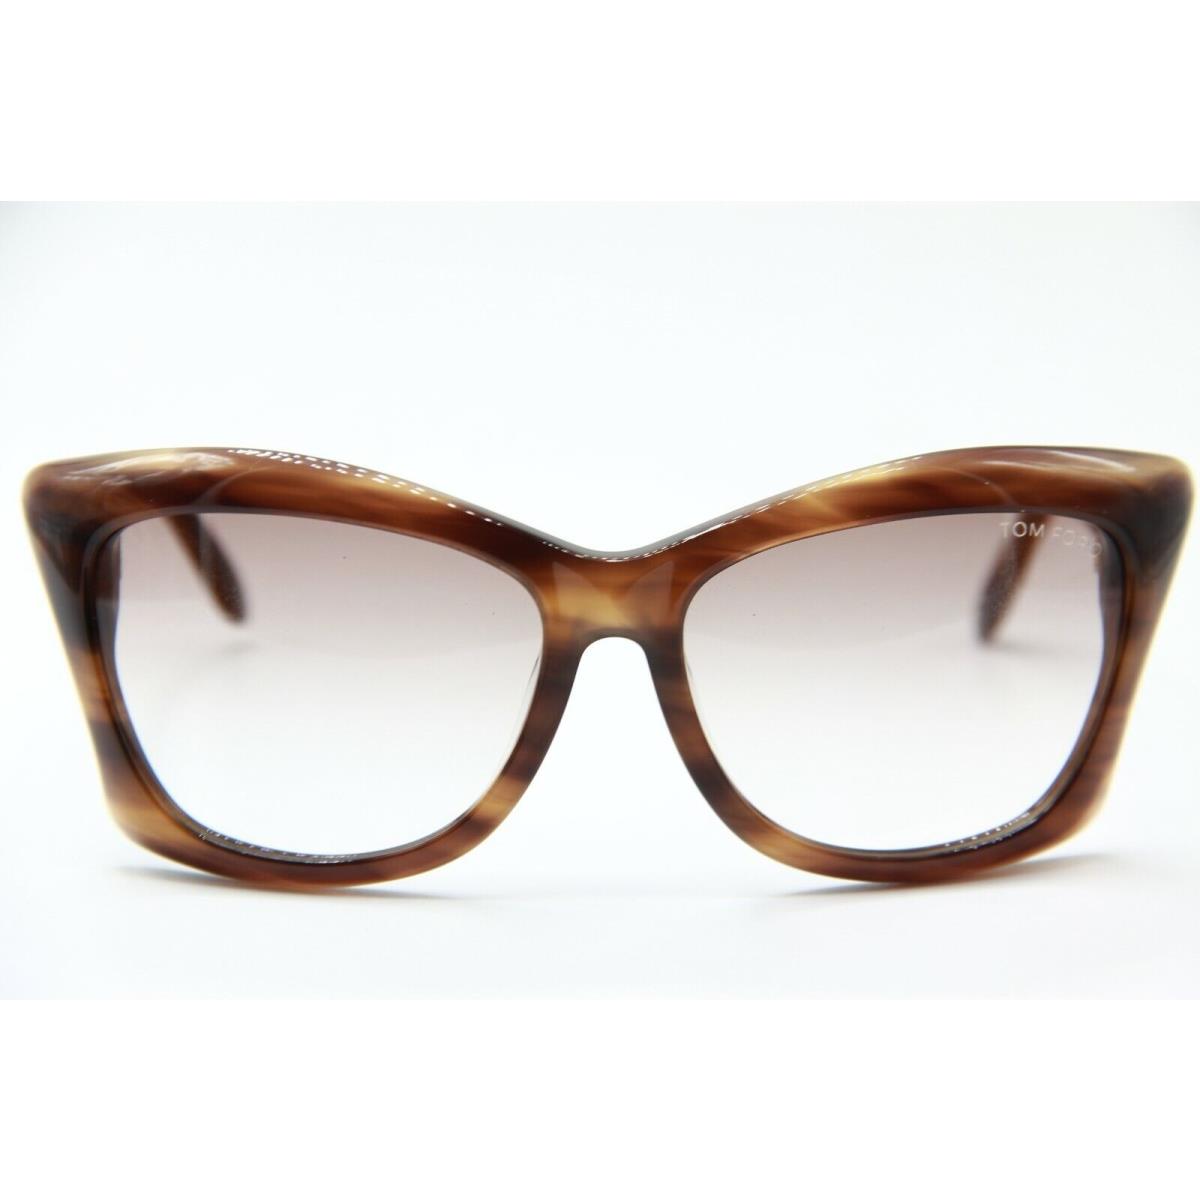 Tom Ford sunglasses  - Frame: BROWN TORTOISE, Lens: BROWN 2